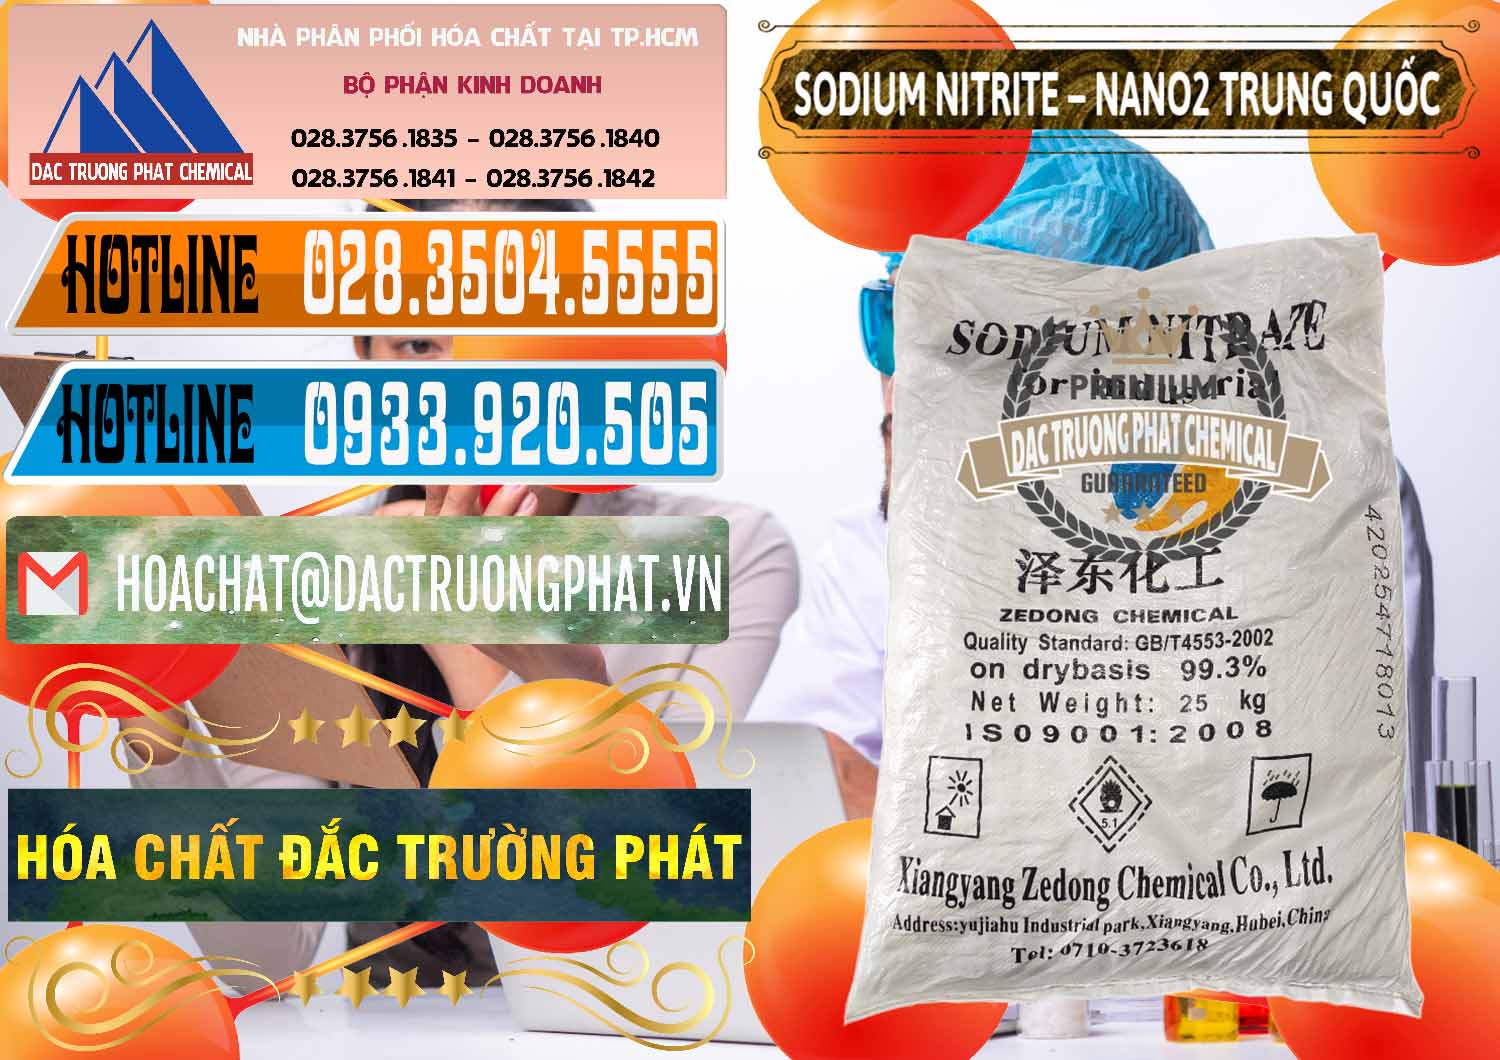 Cty kinh doanh _ bán Sodium Nitrite - NANO2 Zedong Trung Quốc China - 0149 - Nơi cung cấp và phân phối hóa chất tại TP.HCM - stmp.net